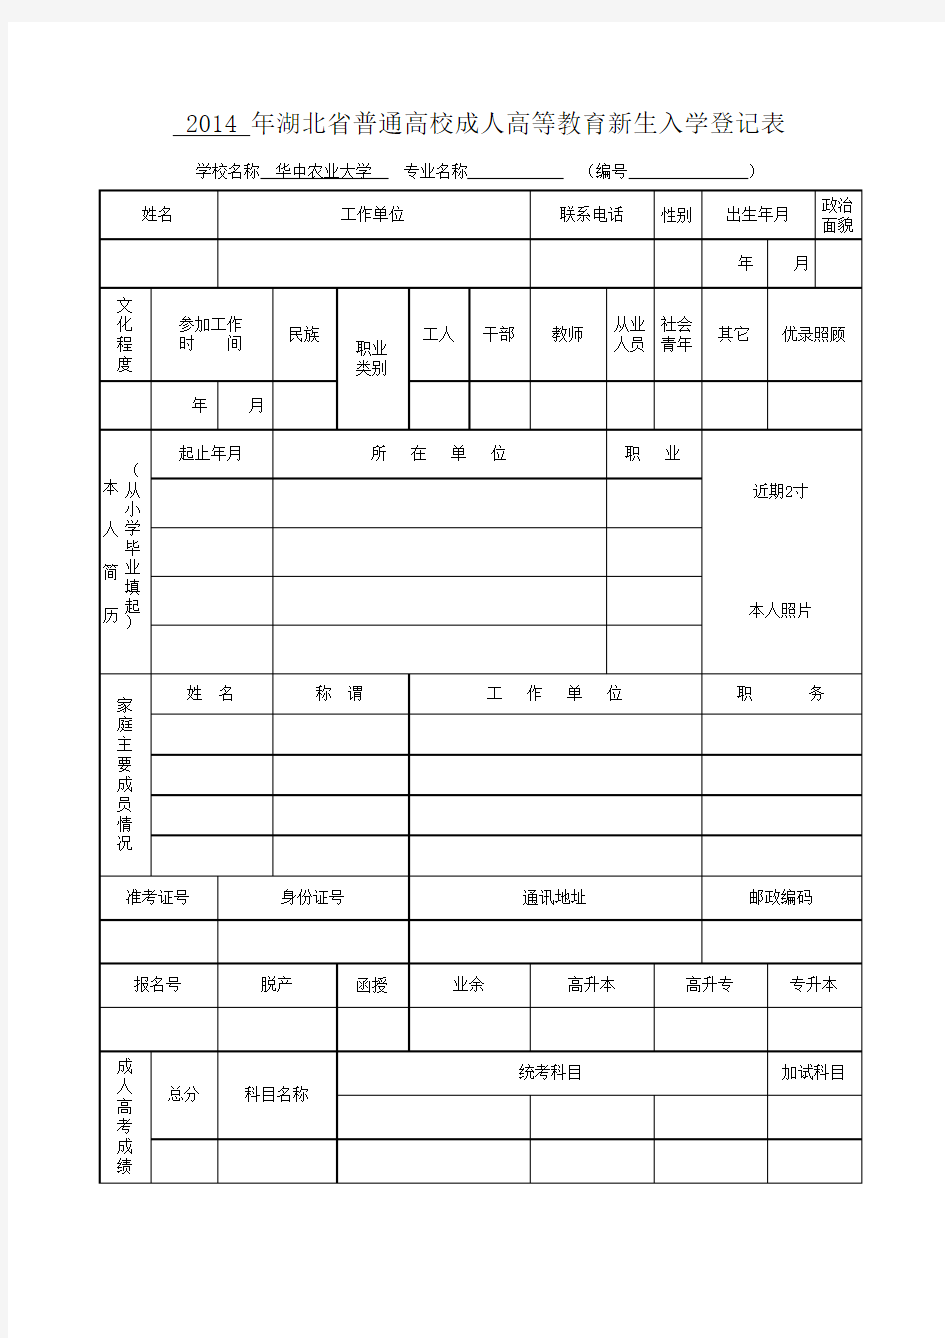 湖北省普通高校成人高等教育新生入学登记表